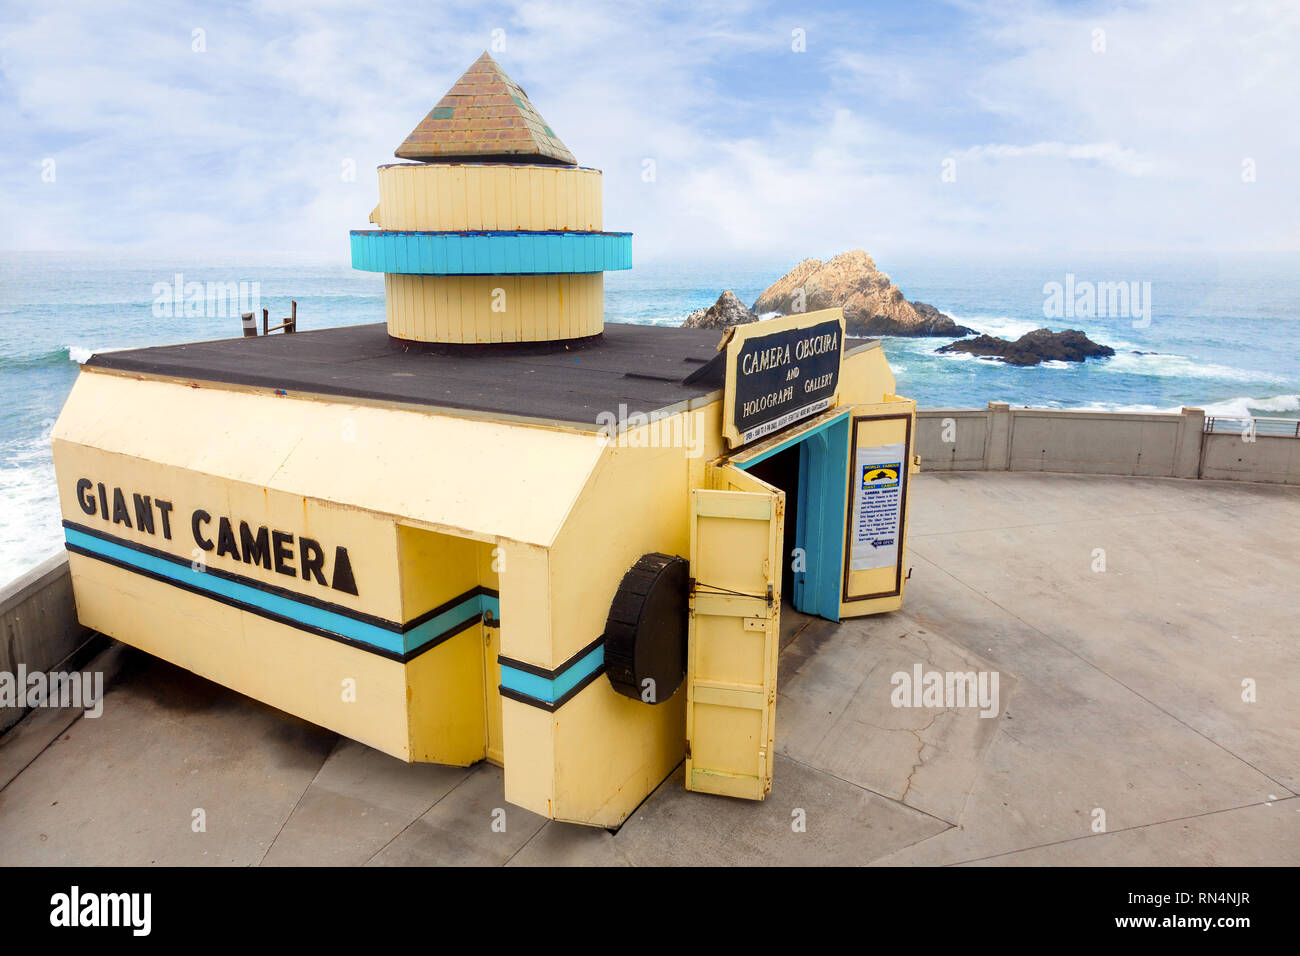 SAN FRANCISCO-la Giant Camera si affaccia sul mare a Ocean Beach. Una attrazione turistica fin dal 1946, è sul Registro Nazionale dei Luoghi Storici. Foto Stock